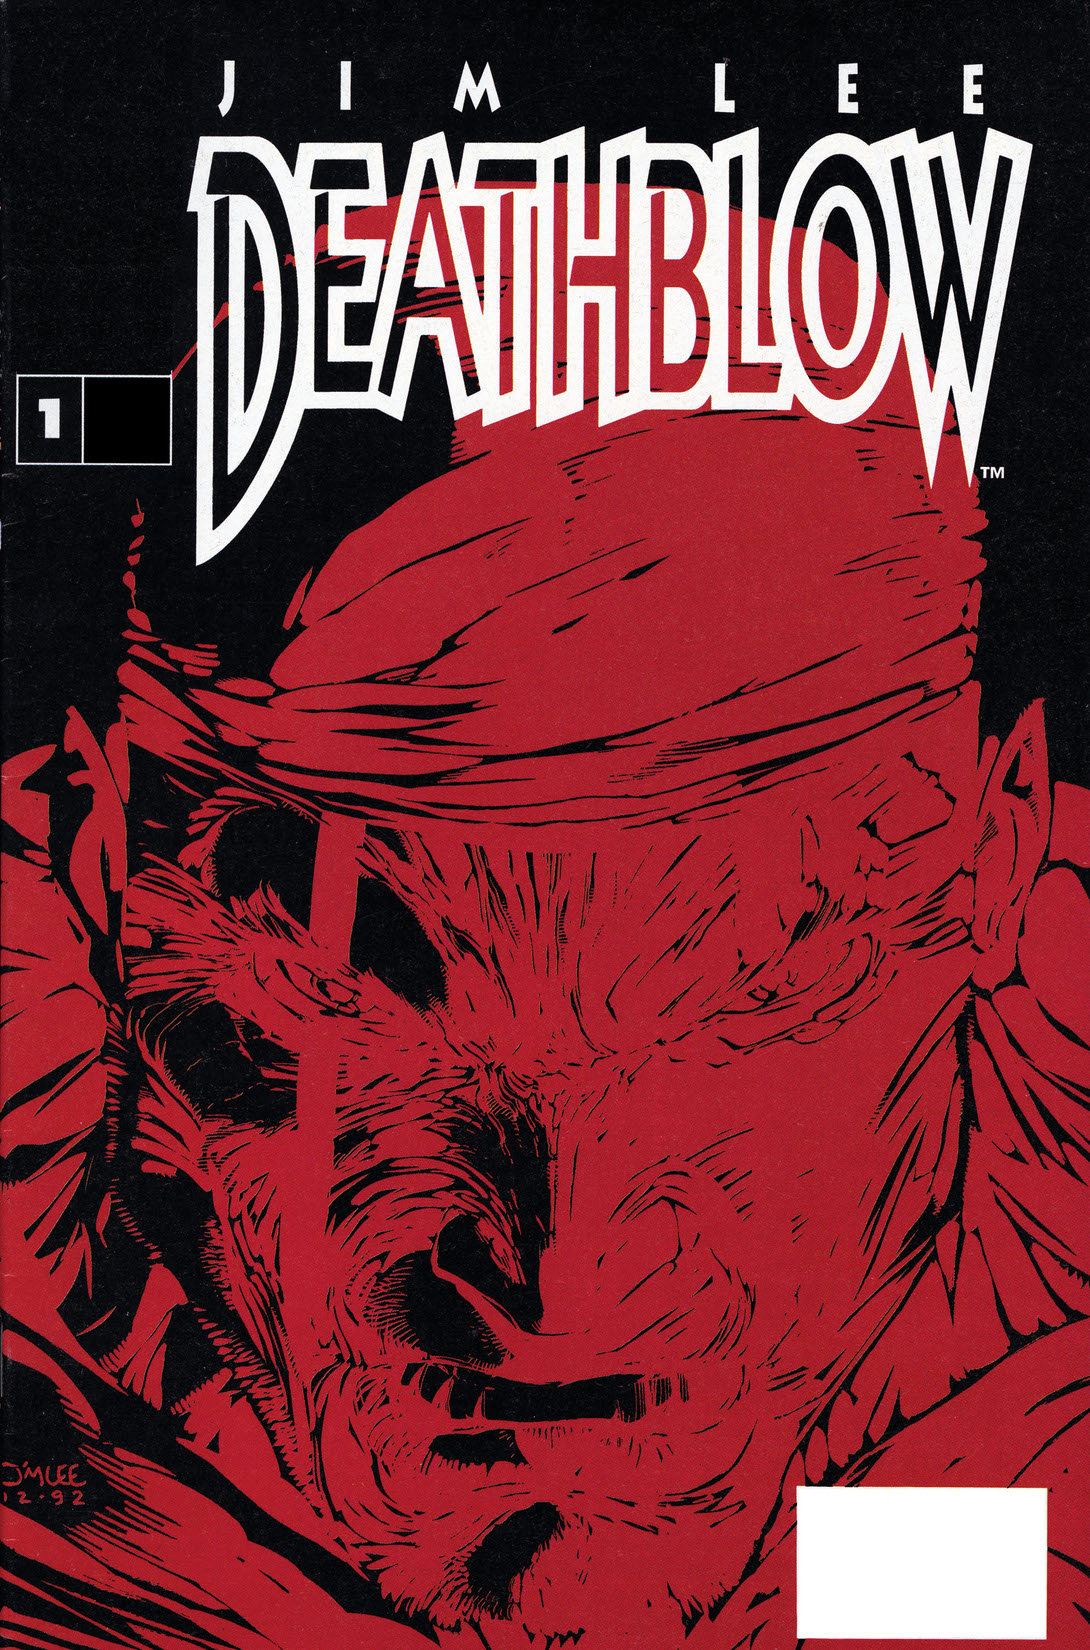 Deathblow #1 preview images